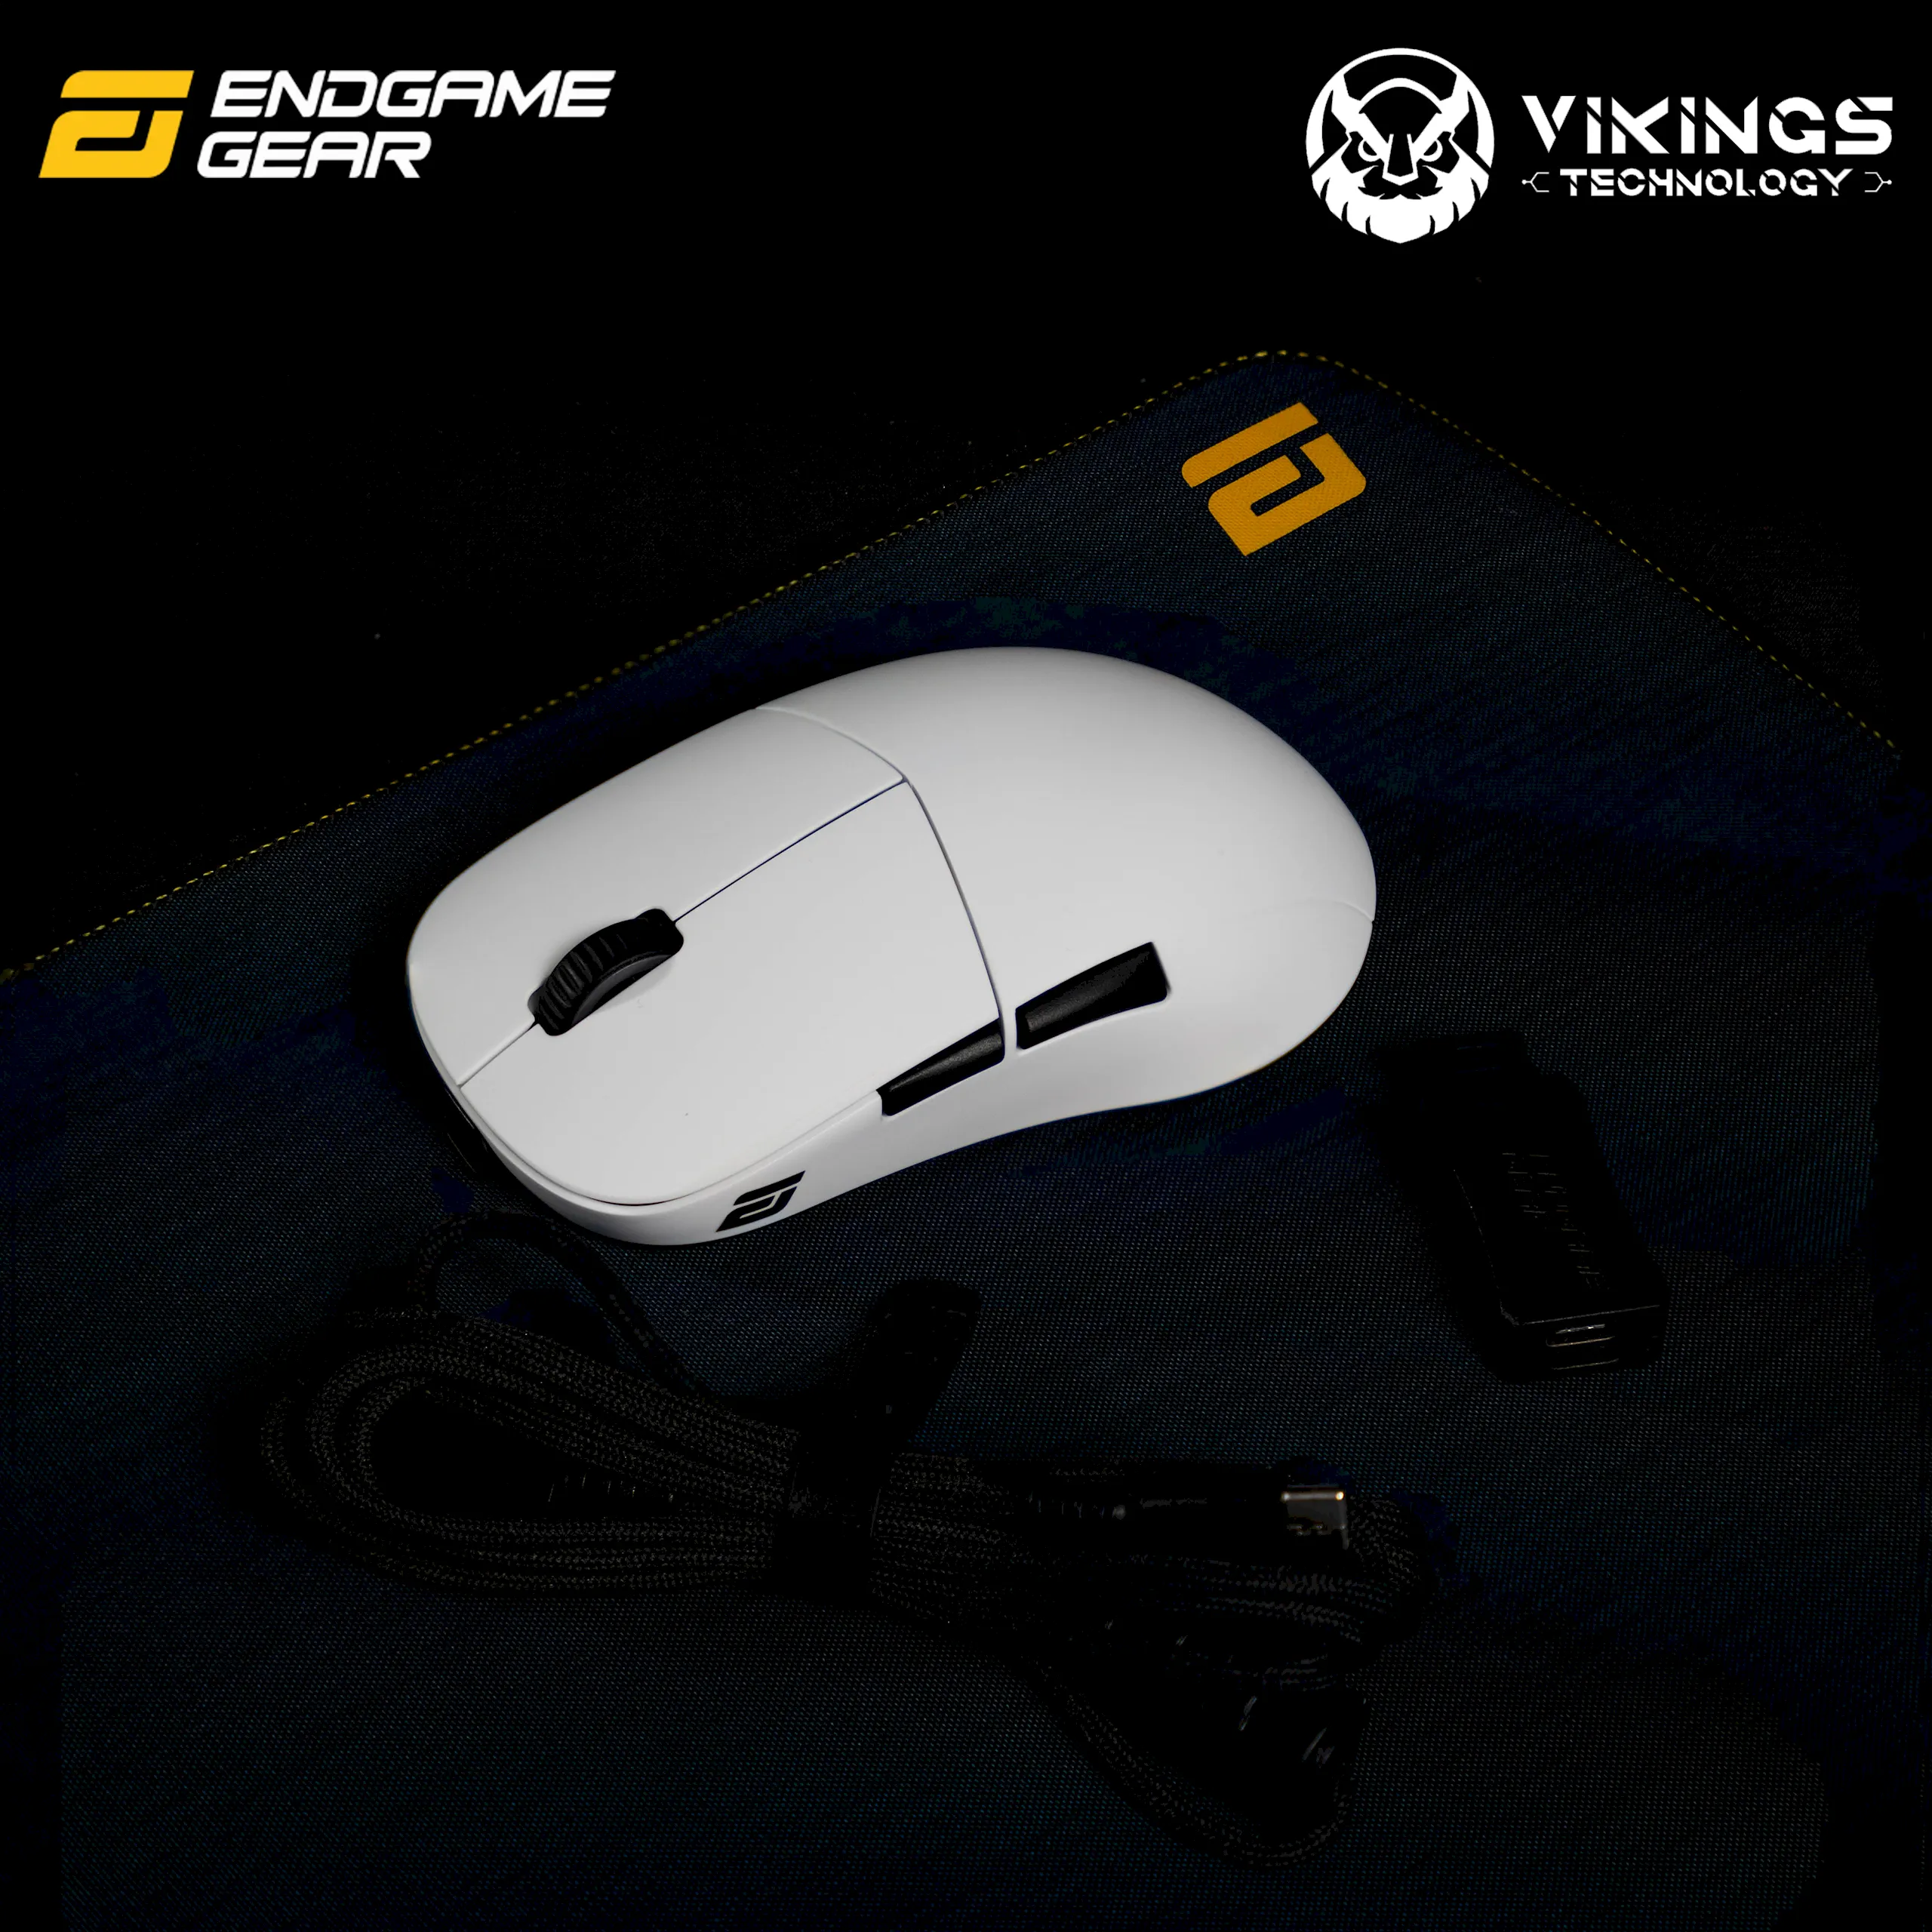 Endgame Gear giới thiệu chuột không dây XM2WE tại thị trường Việt Nam